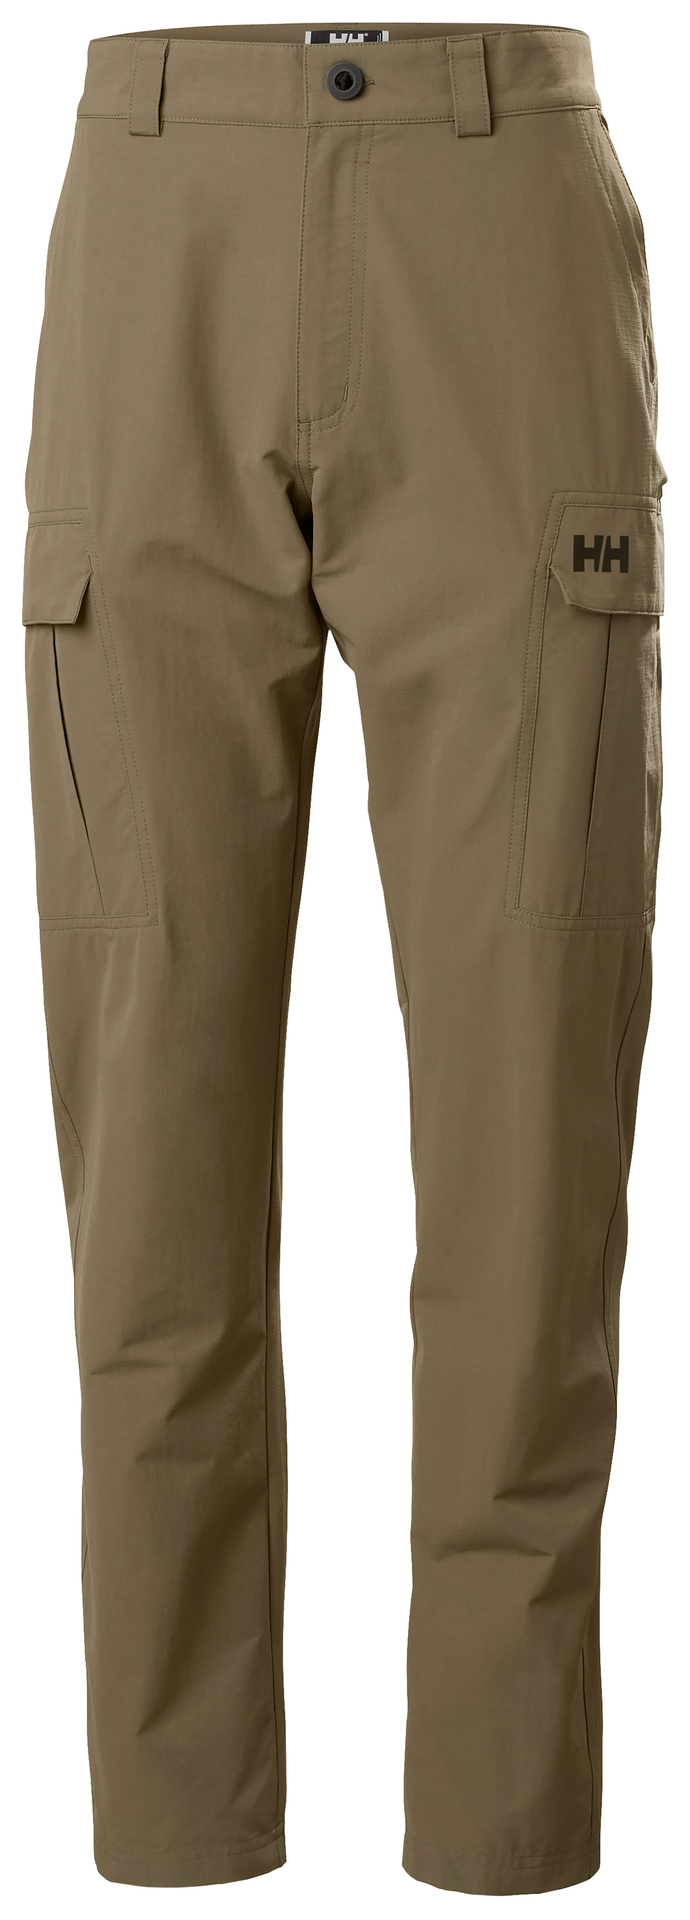 מכנסי קארגו HH מנדפי זיעה | Men's HH Quick-Dry Cargo Pants